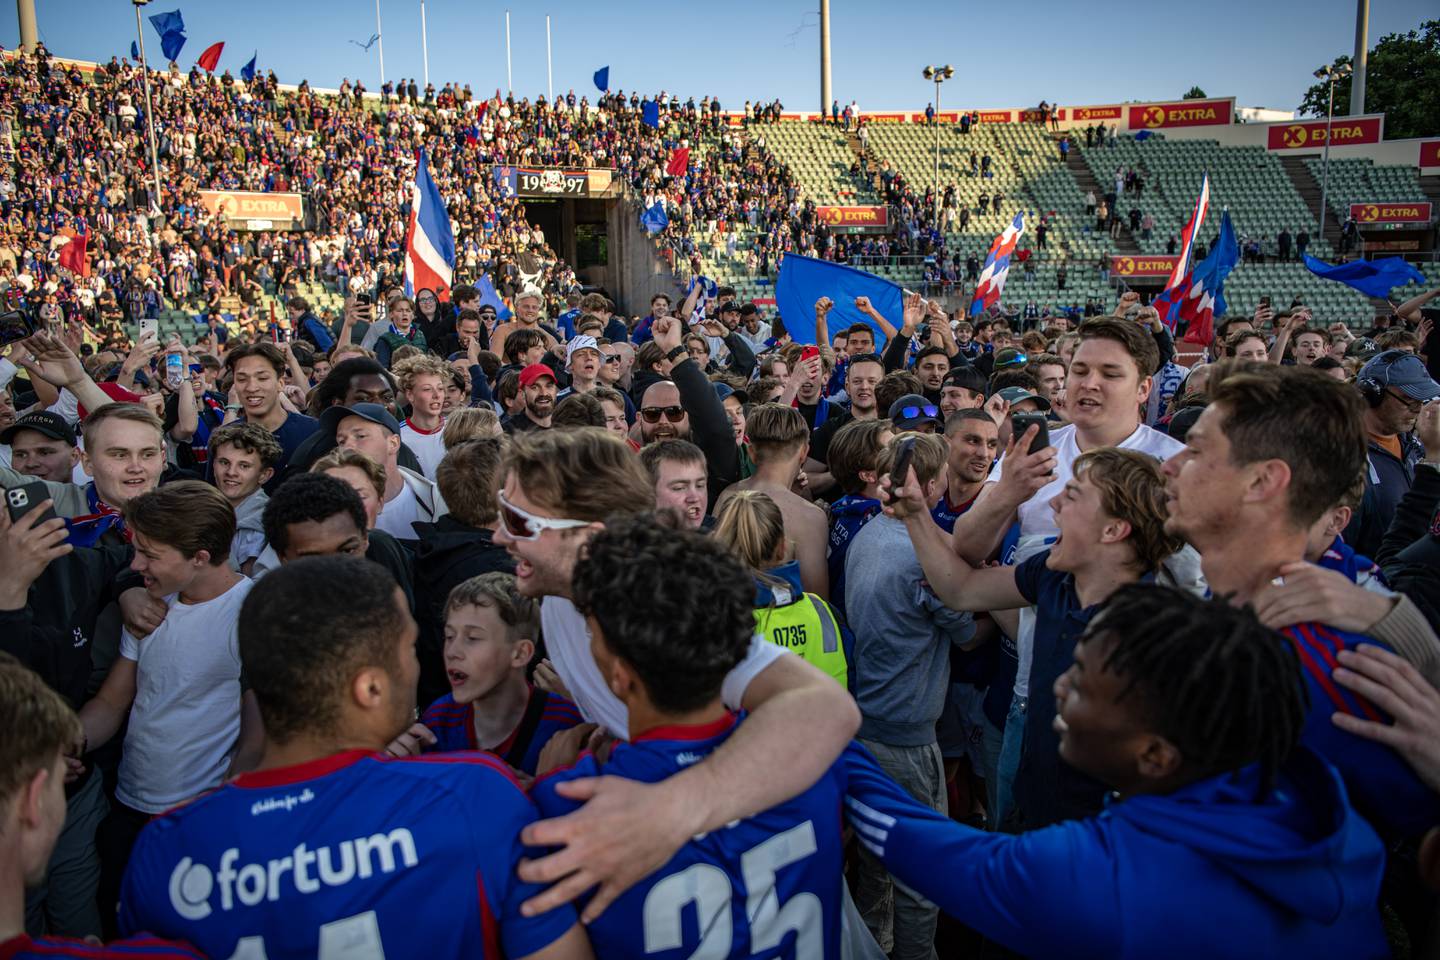 VIF supportere feirer 2-1 seier over Lyn etter cupkampen i fotball NM for menn på Bislett stadion.